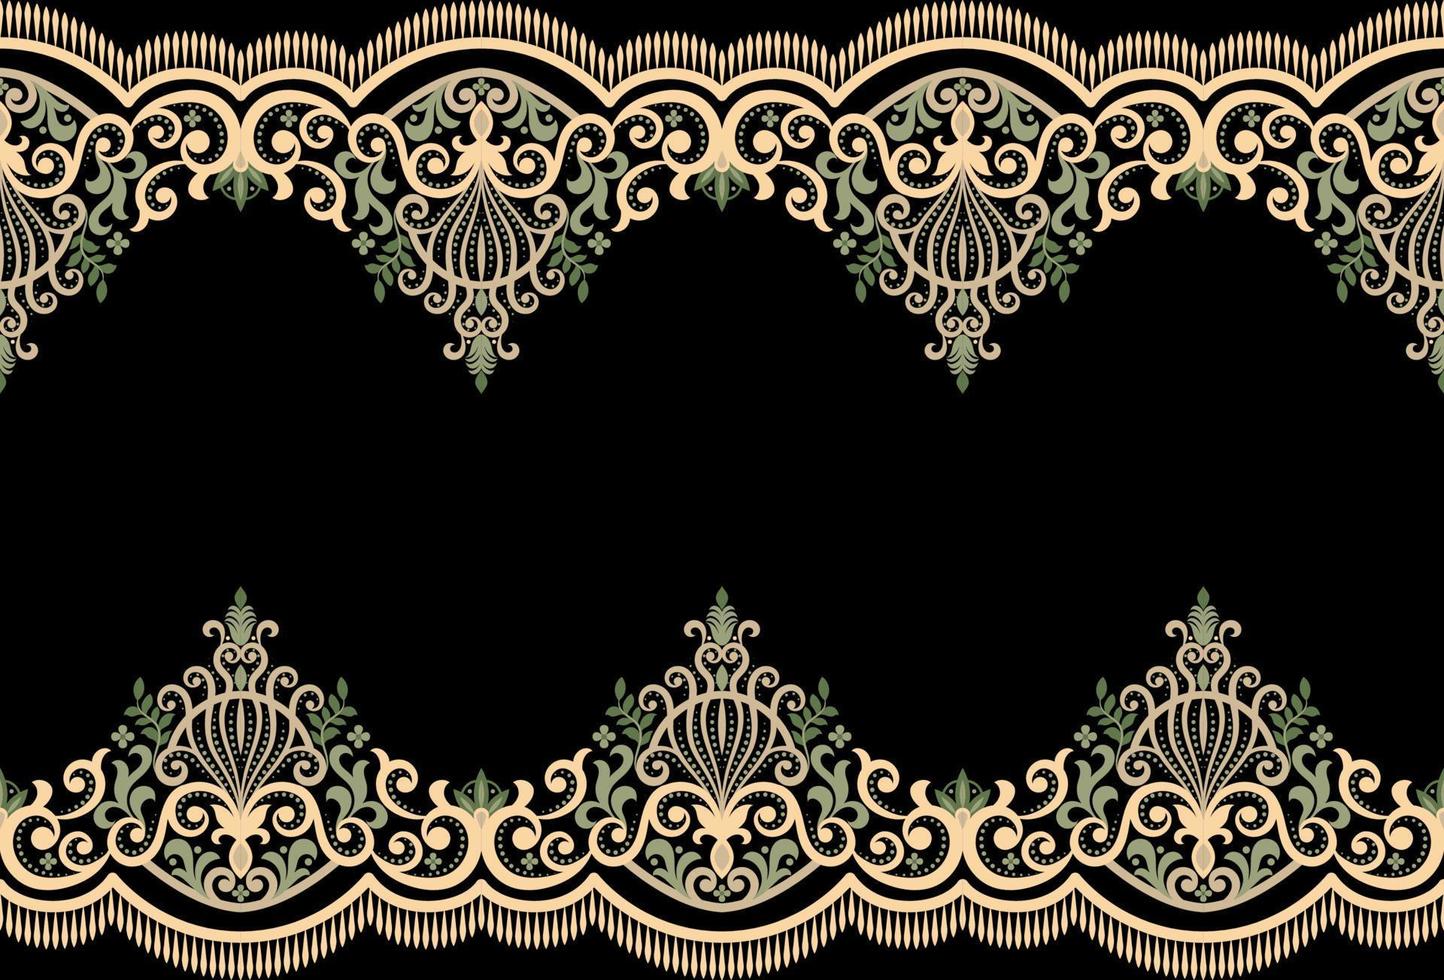 Damast nahtloses Vektormuster. klassisches Vintage-Damast-Ornament, königliches geometrisches nahtloses Muster für Tapeten, Textilien, Verpackungen. florales Barockmuster, grüner Hintergrund vektor